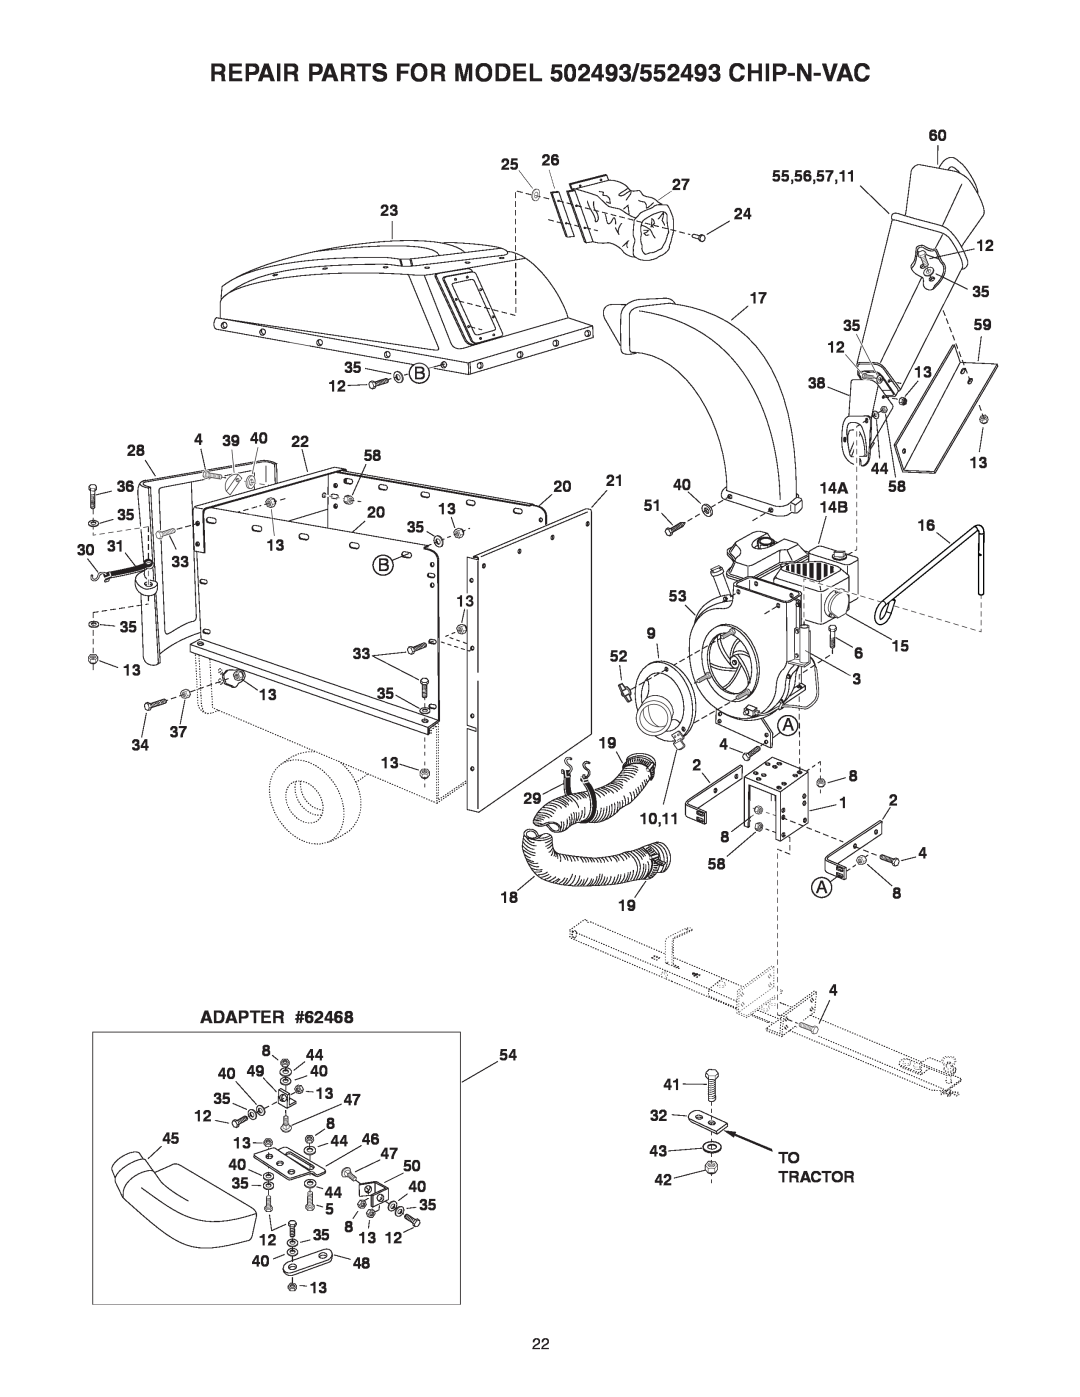 Sears manual REPAIR PARTS FOR MODEL 502493/552493 CHIP-N-VAC, ADAPTER #62468 